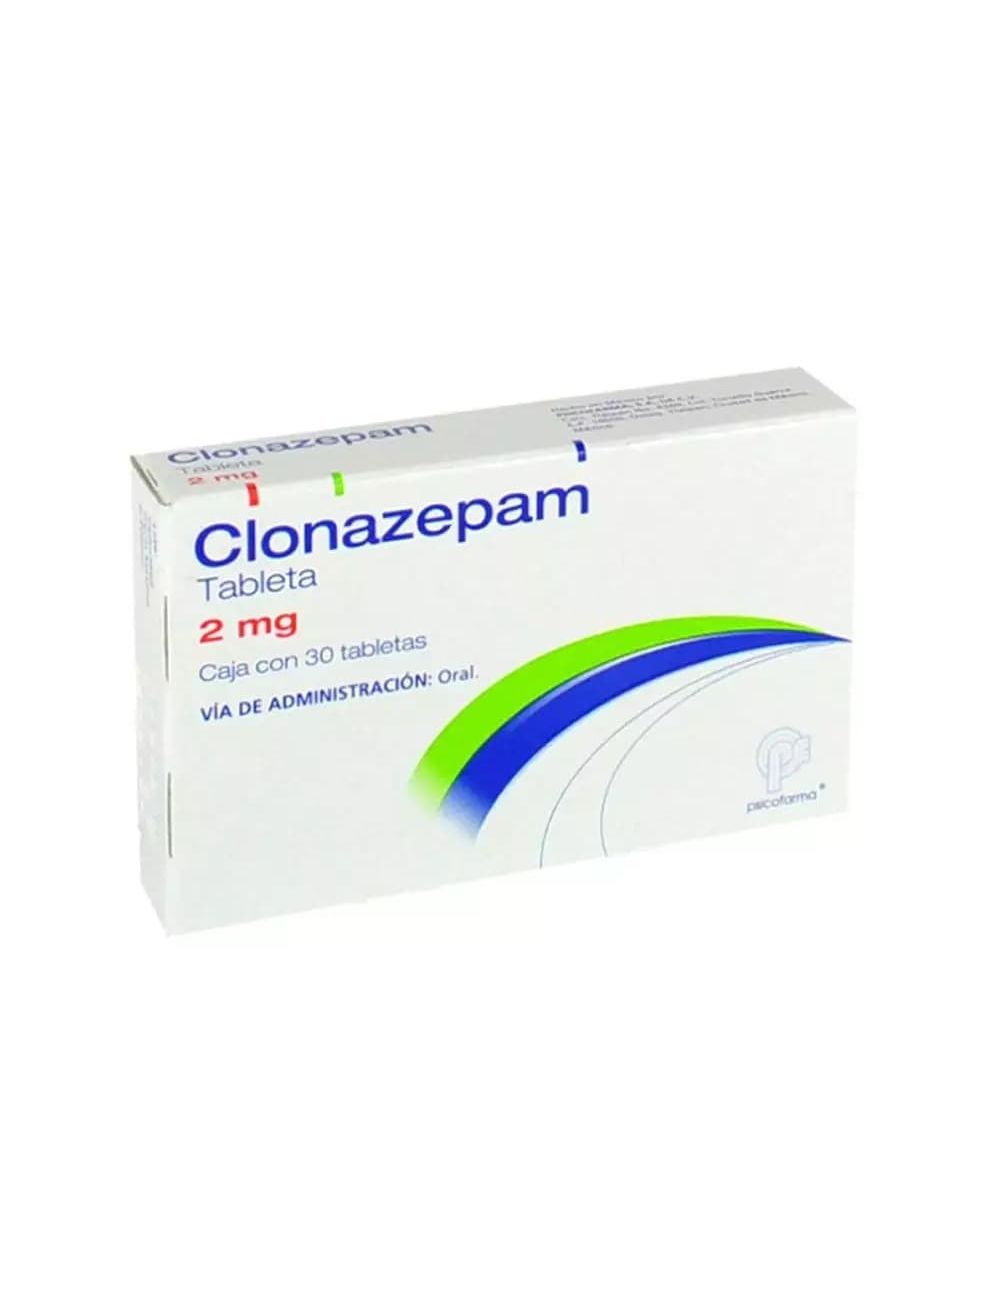 Precio Clonazepam 2 mg 30 tabletas | Farmalisto MX